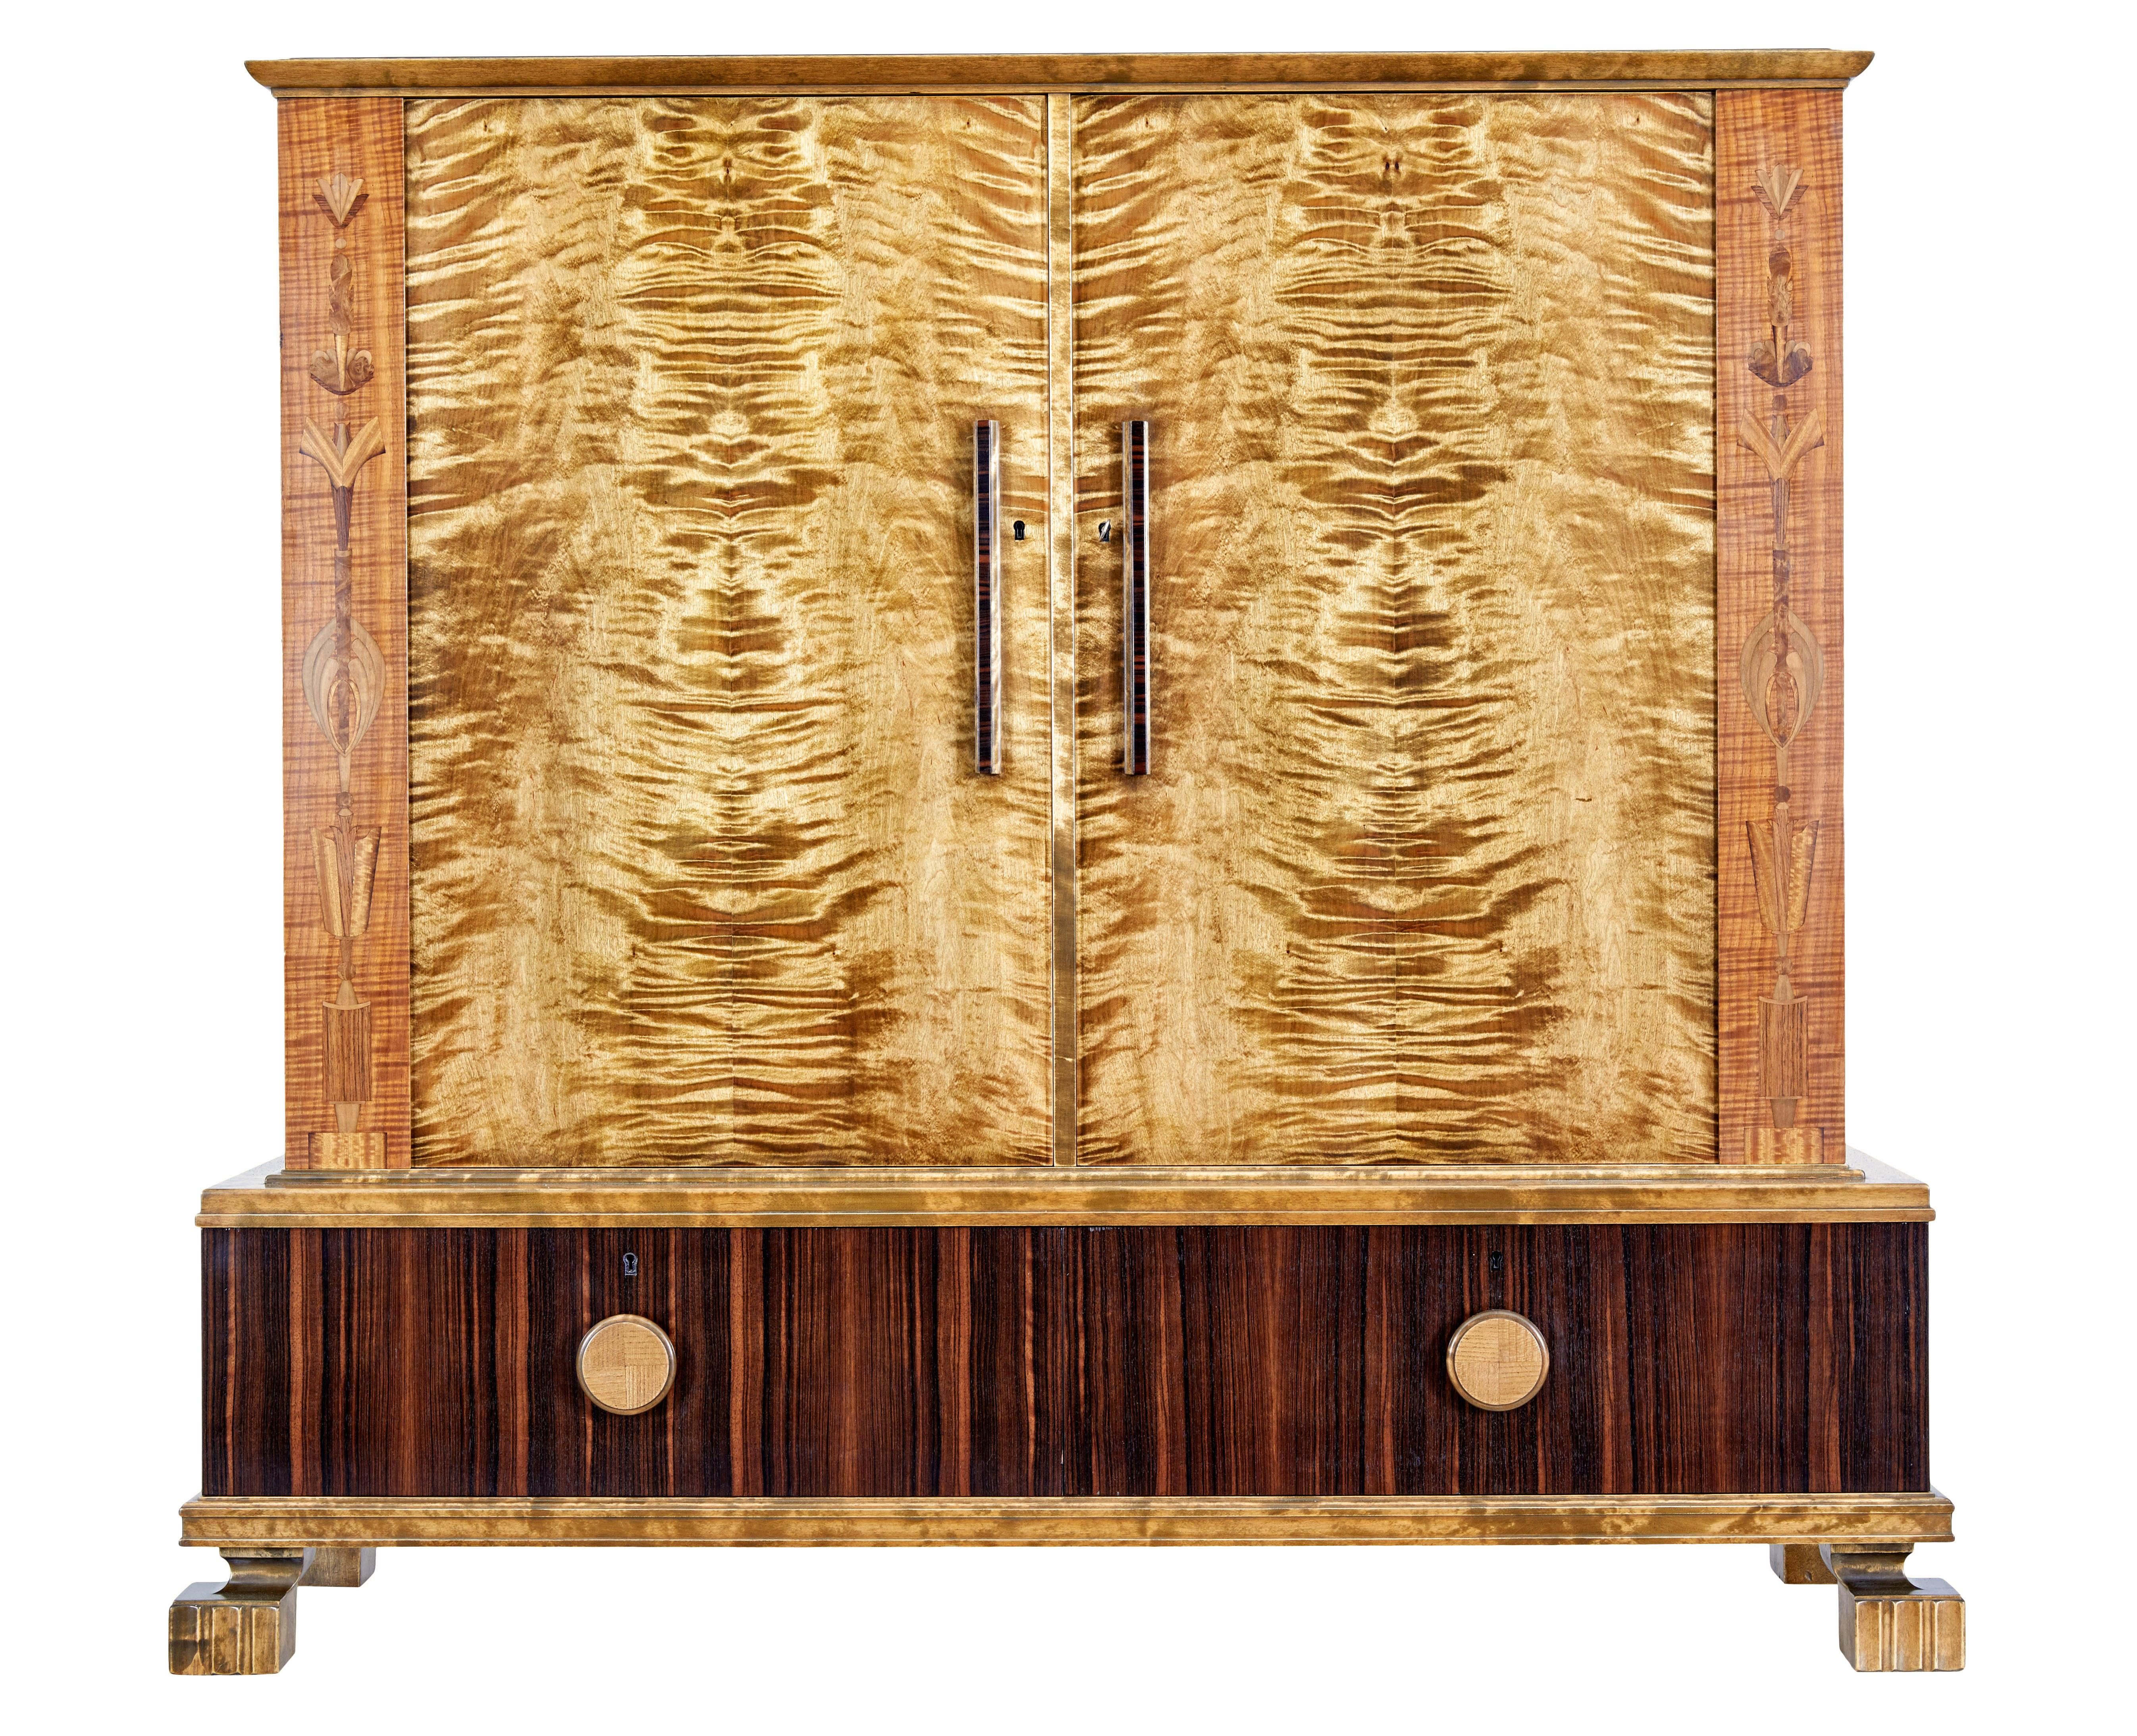 Schwedischer Art-déco-Schrank aus Birke um 1930.

Wir freuen uns, Ihnen diesen wunderschönen Schrank bzw. dieses Sideboard anbieten zu können, den bzw. das wir gerade in unserer Werkstatt neu lackiert haben.

Wunderschön präsentiert in Birke,